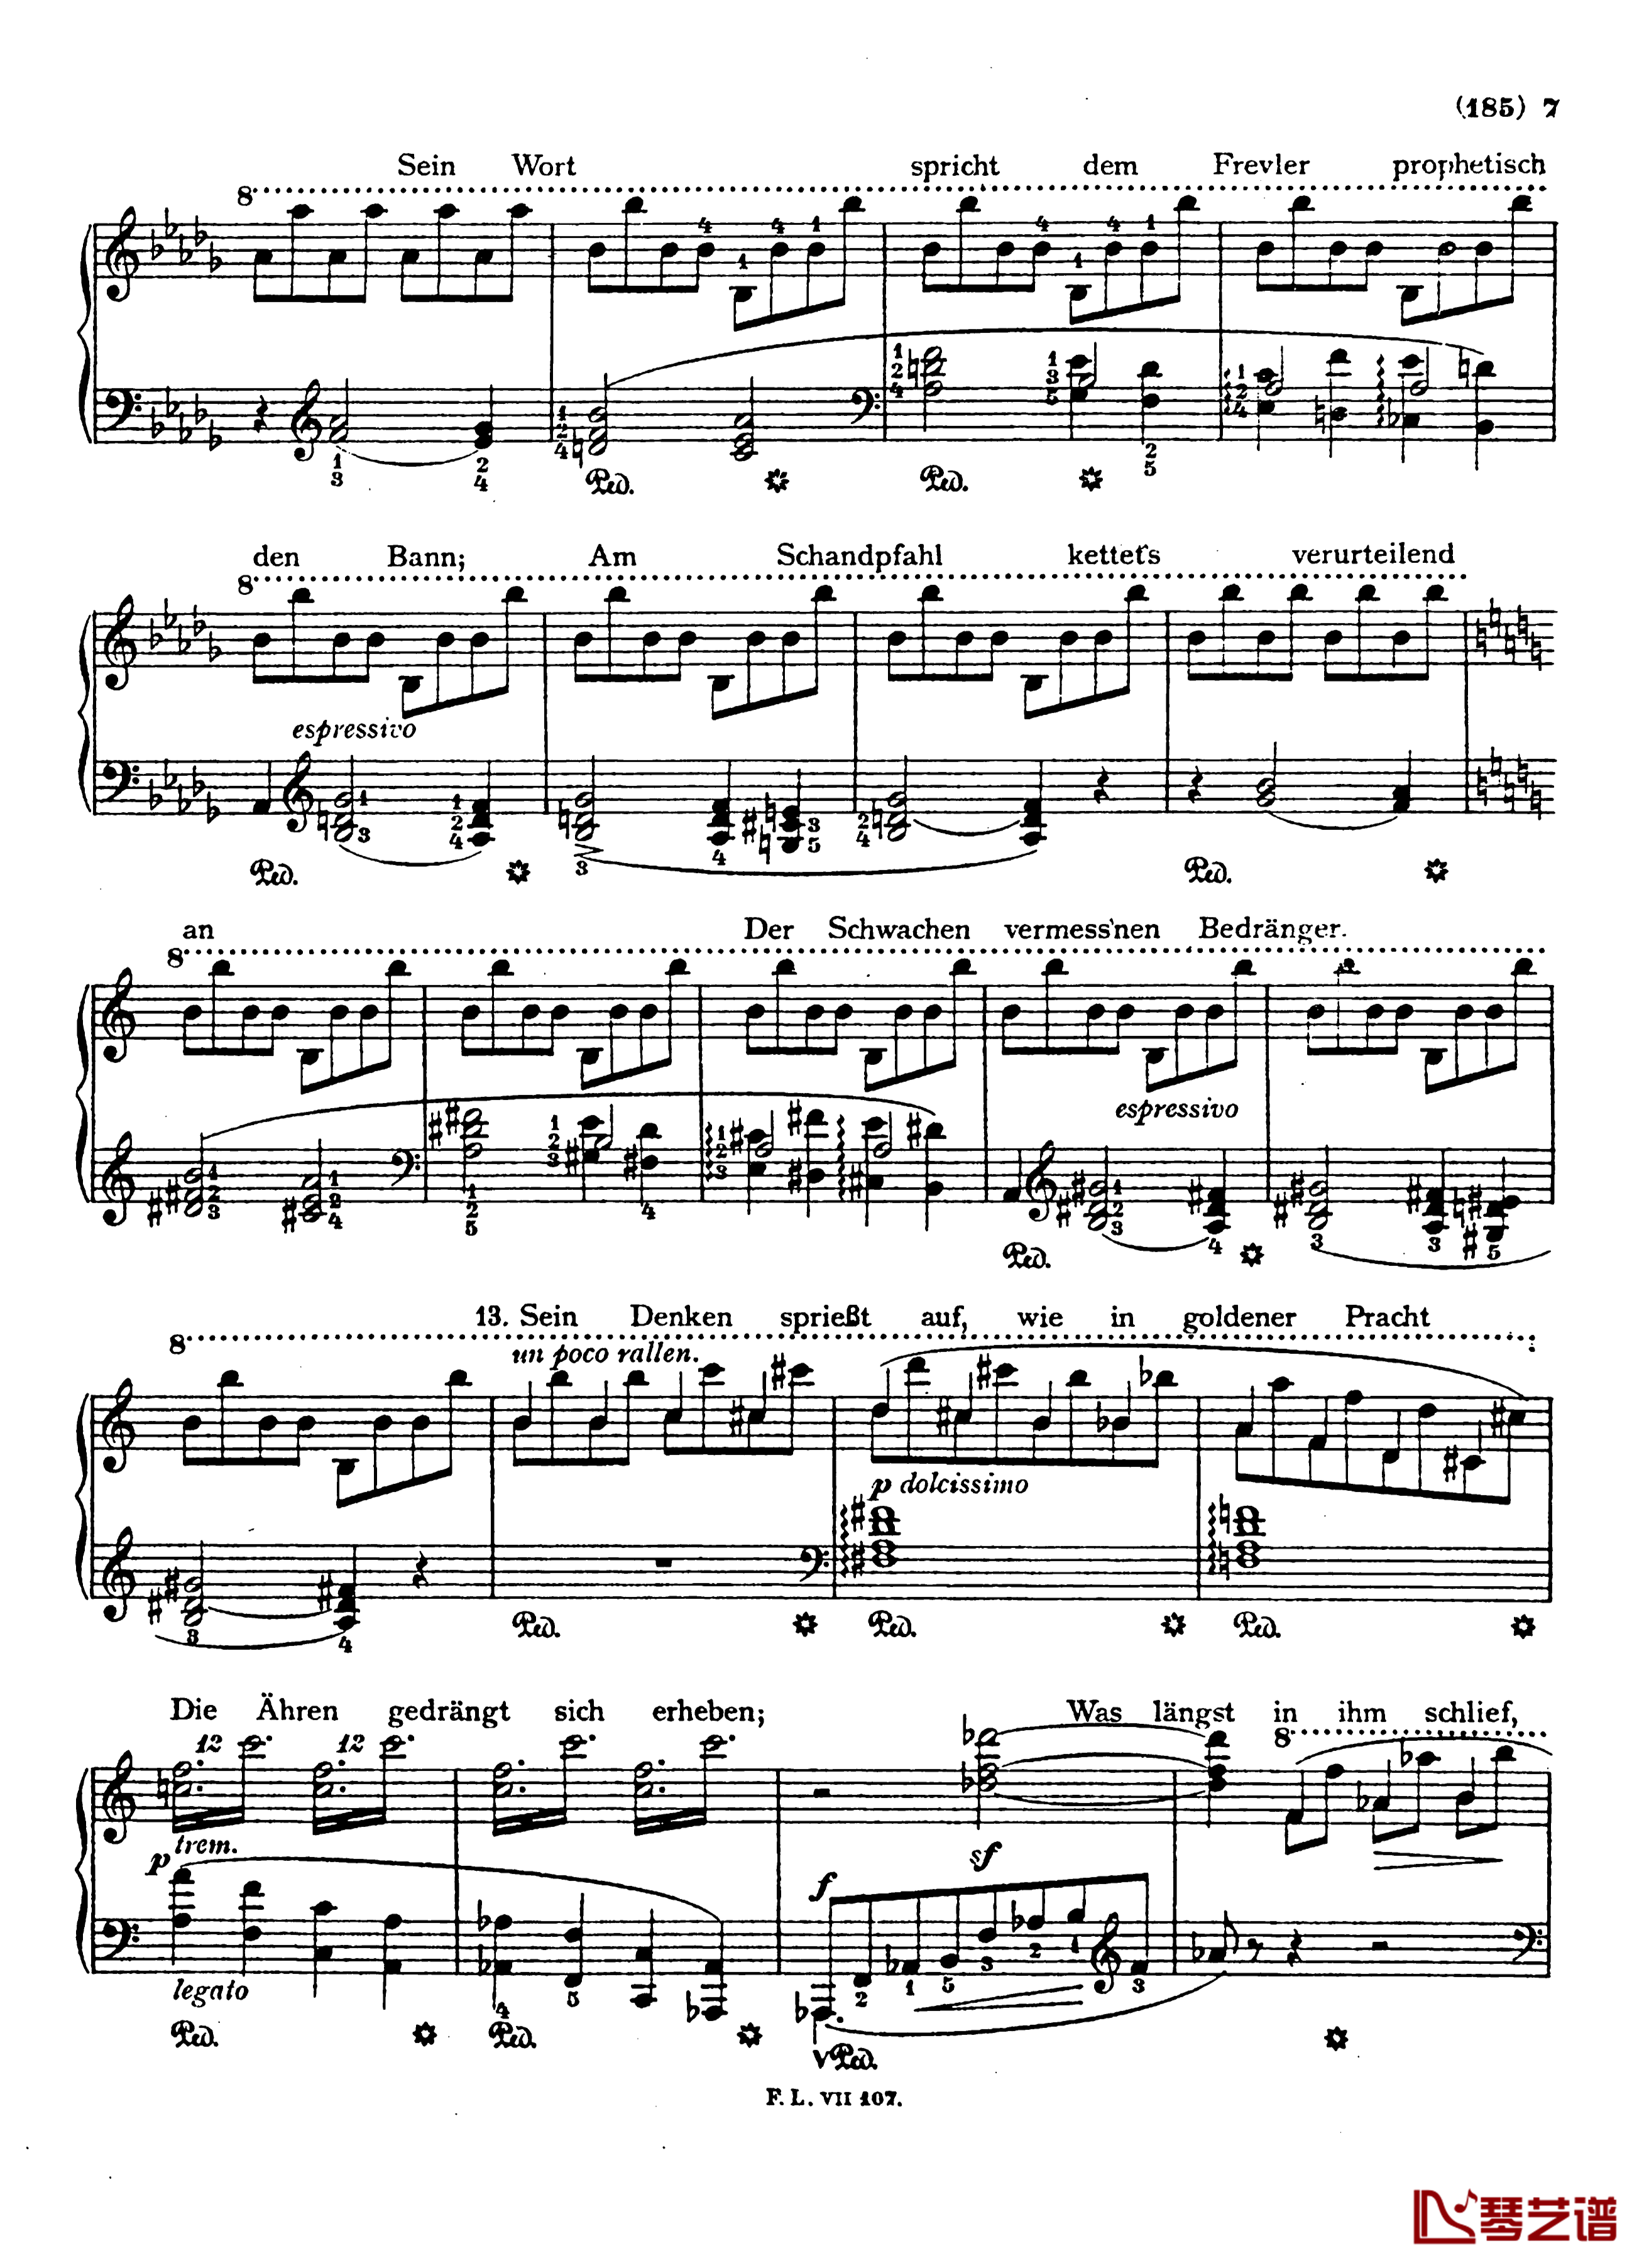  盲人歌手S.350钢琴谱-配乐诗朗诵-李斯特7